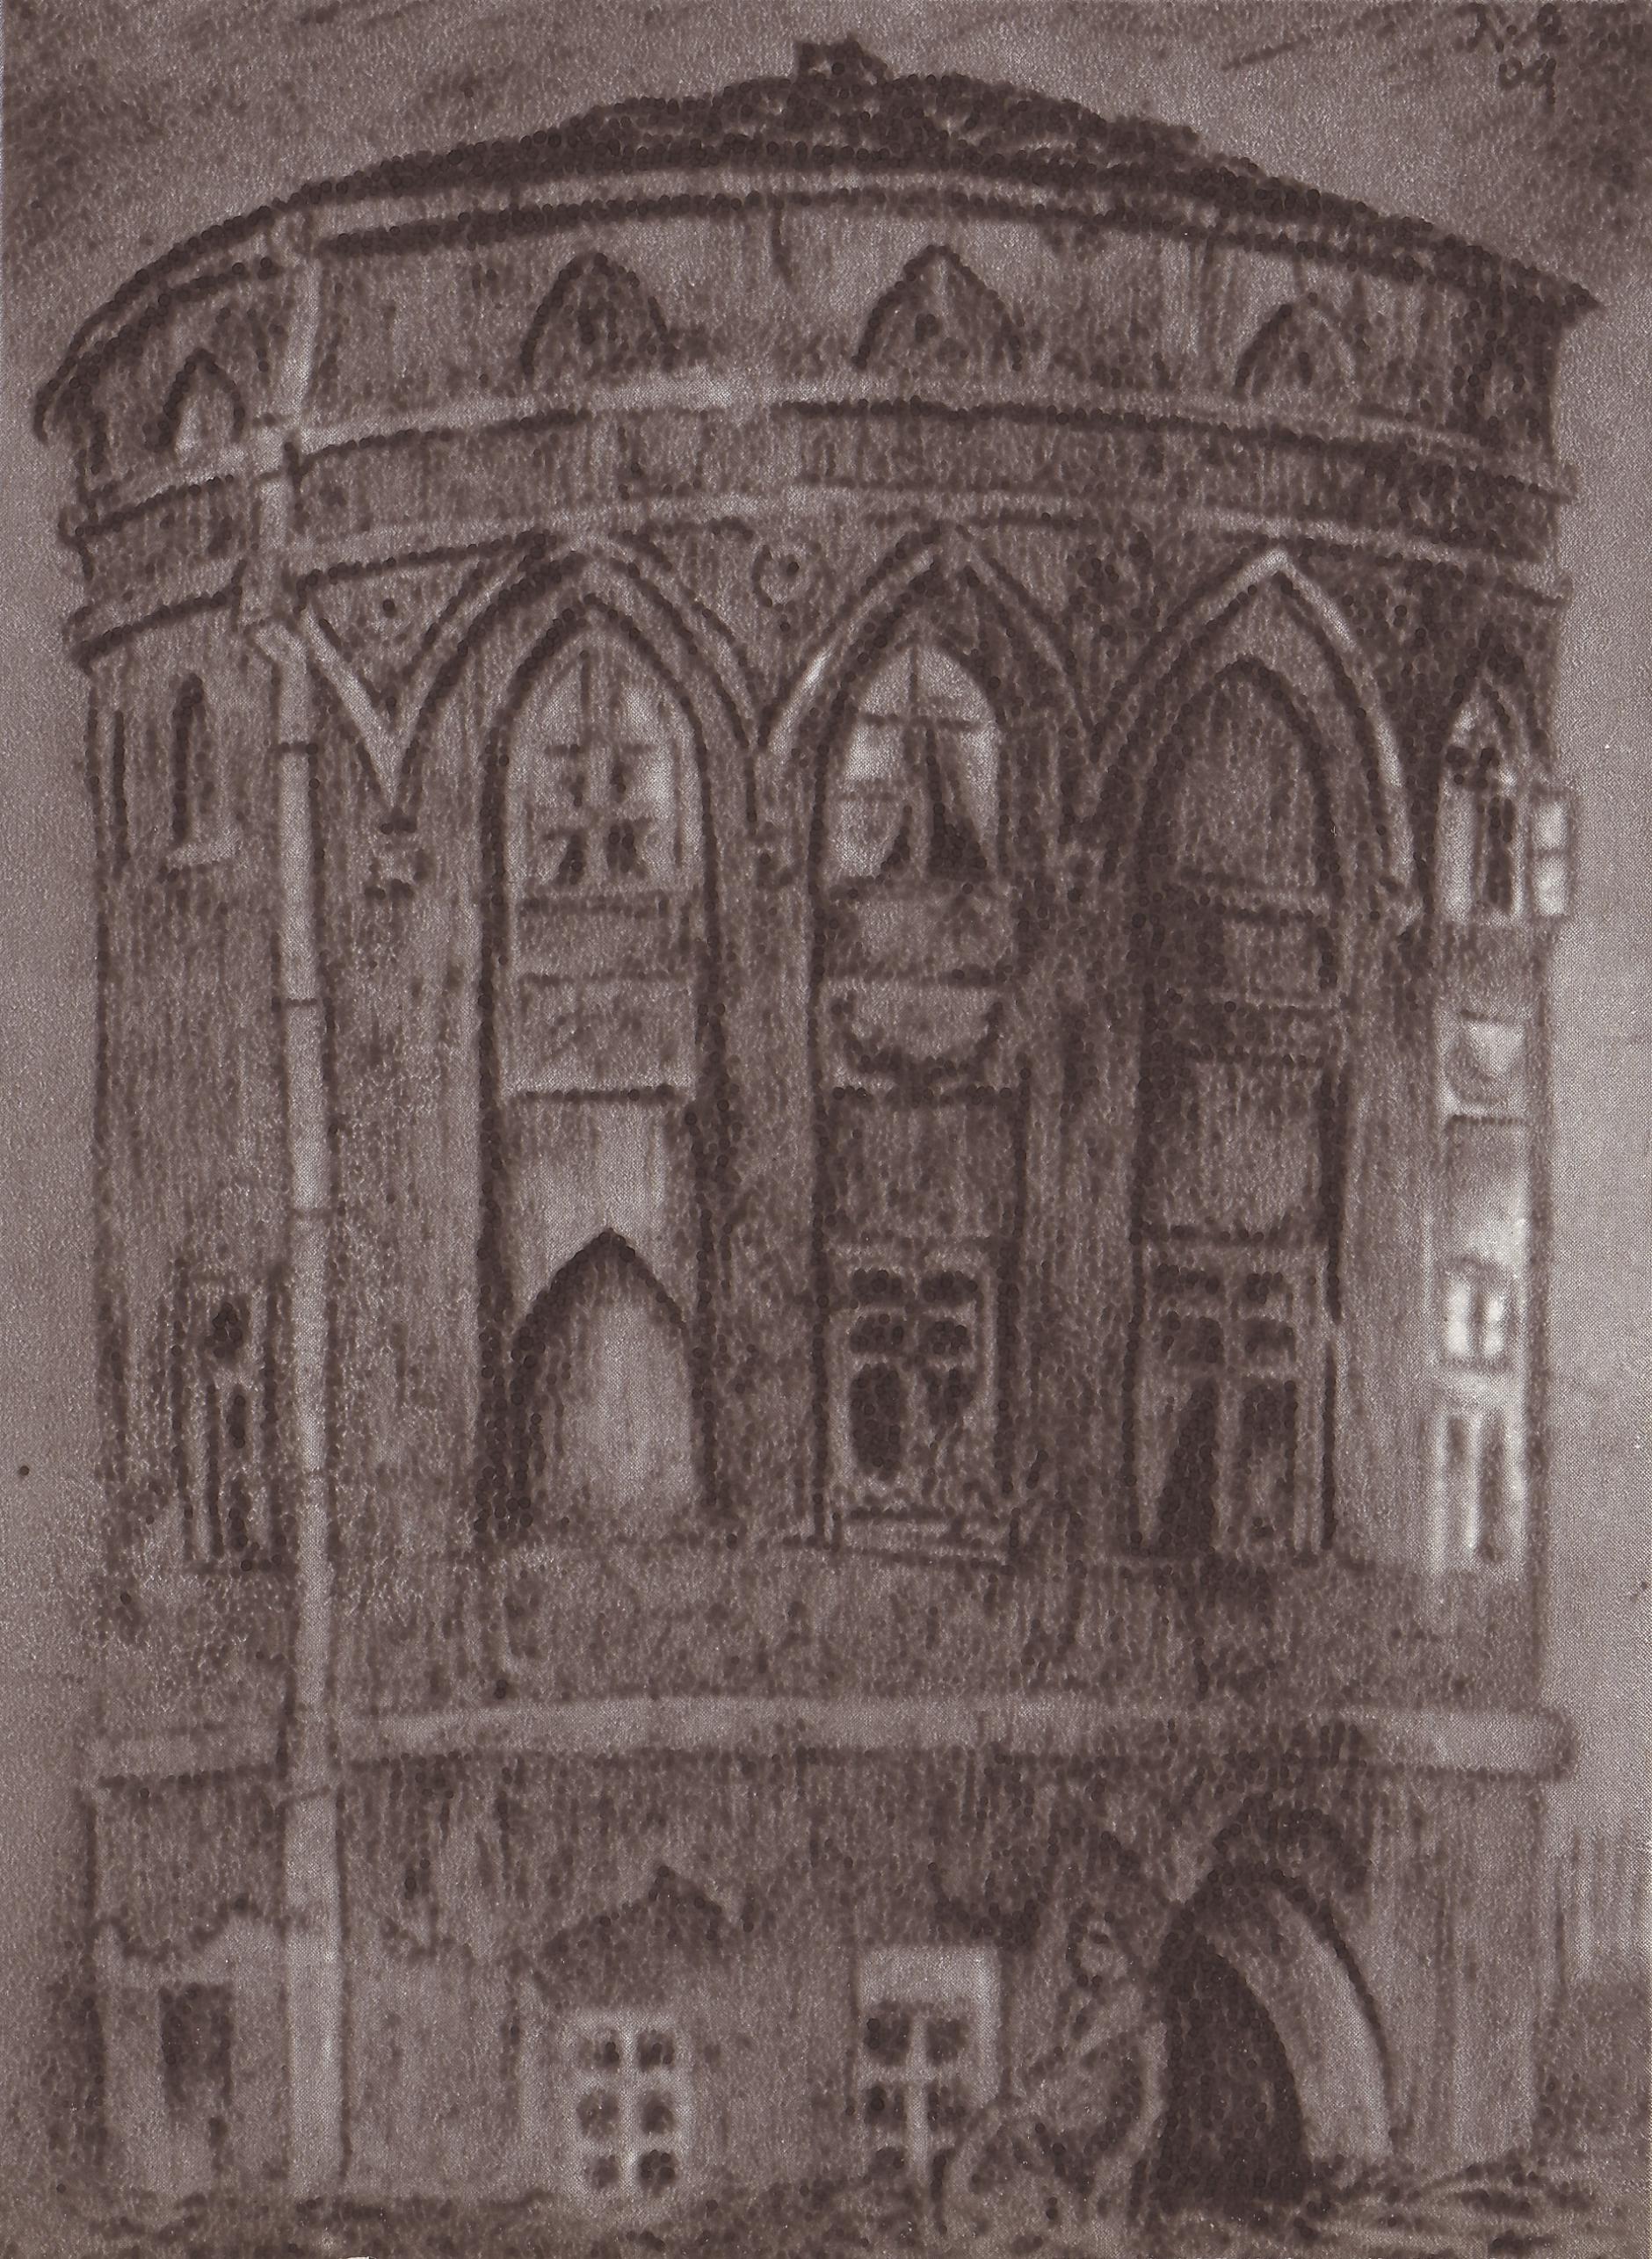 (1909) Baszta Armatnia. Fragment południowej partii miejskich murów obronnych.